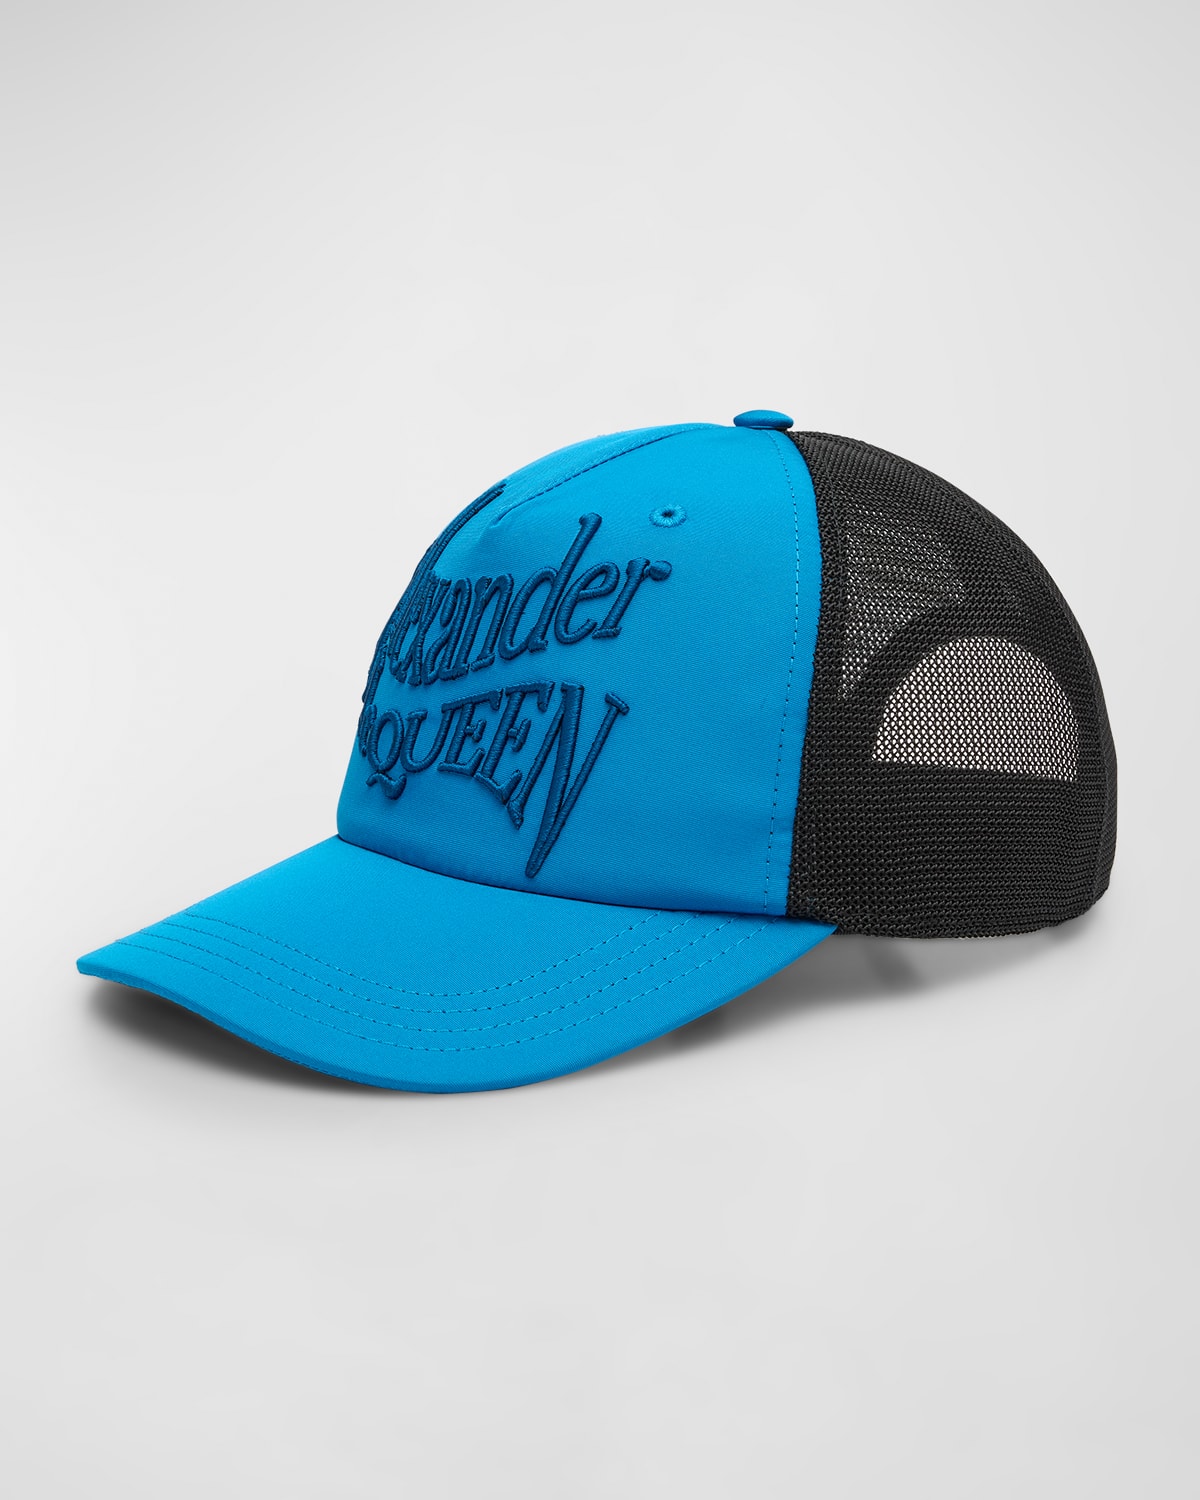 Men's Warped Logo Trucker Hat